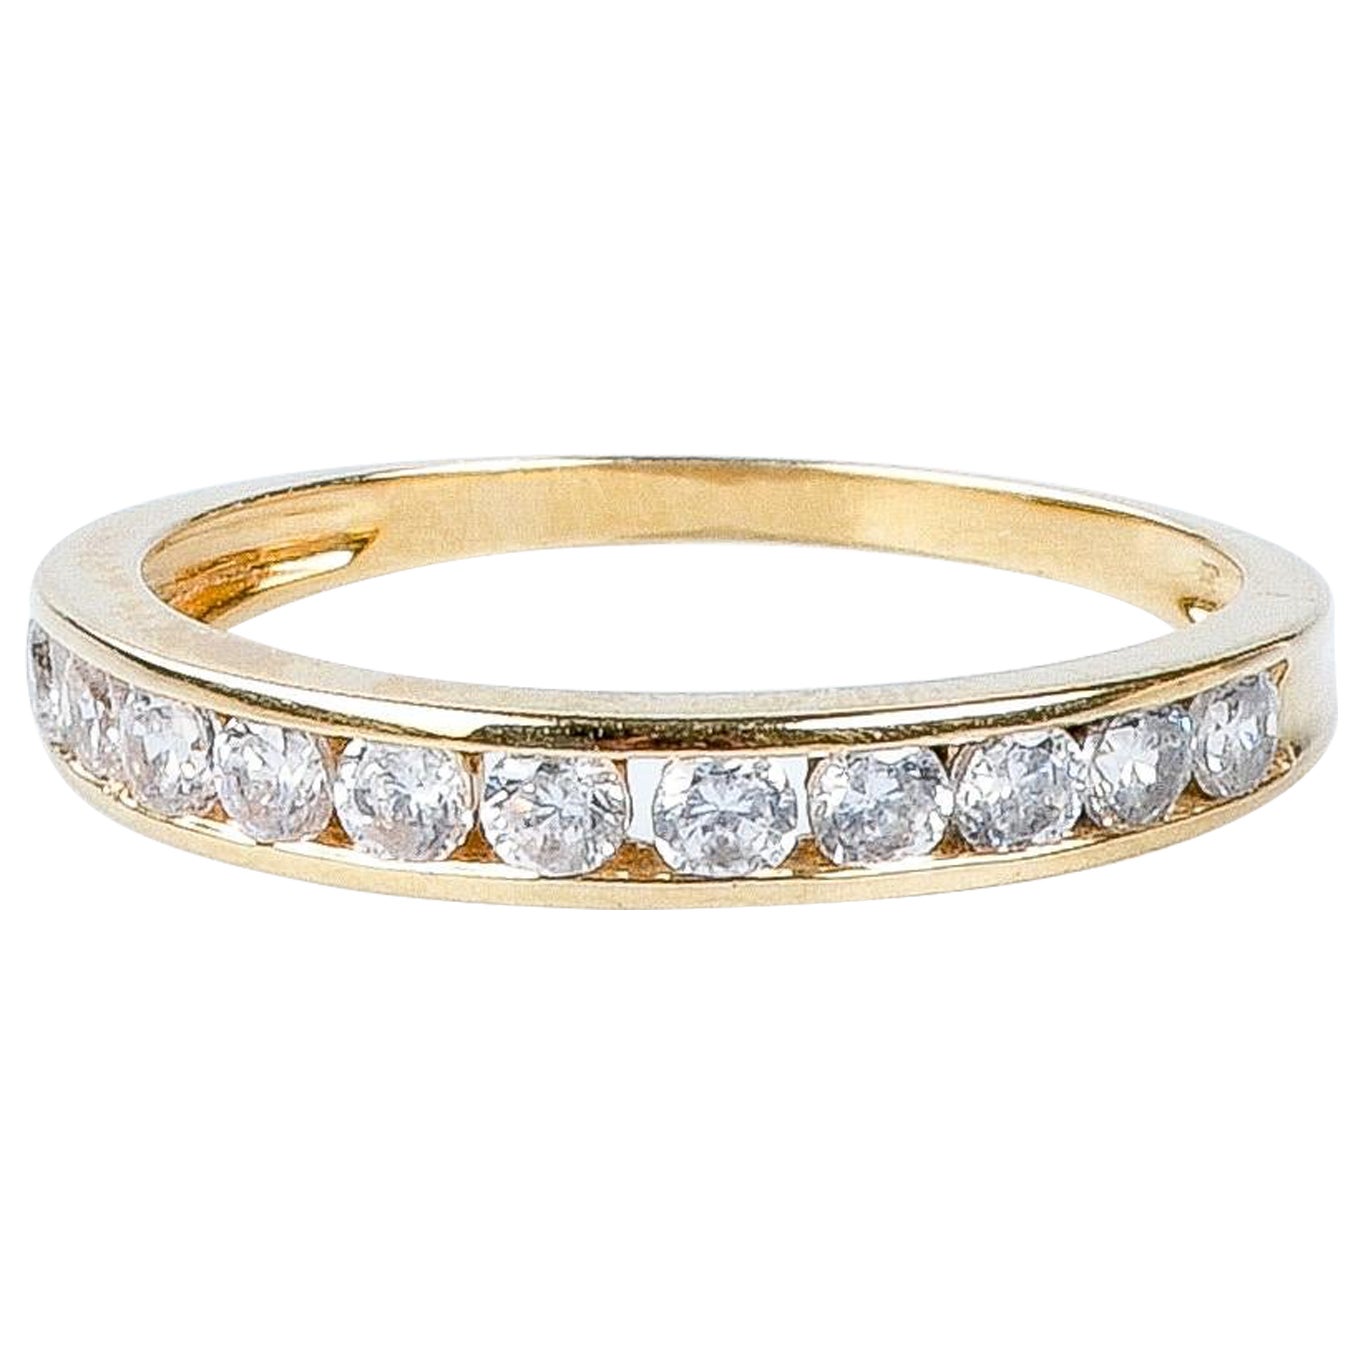 18 carat yellow gold ring